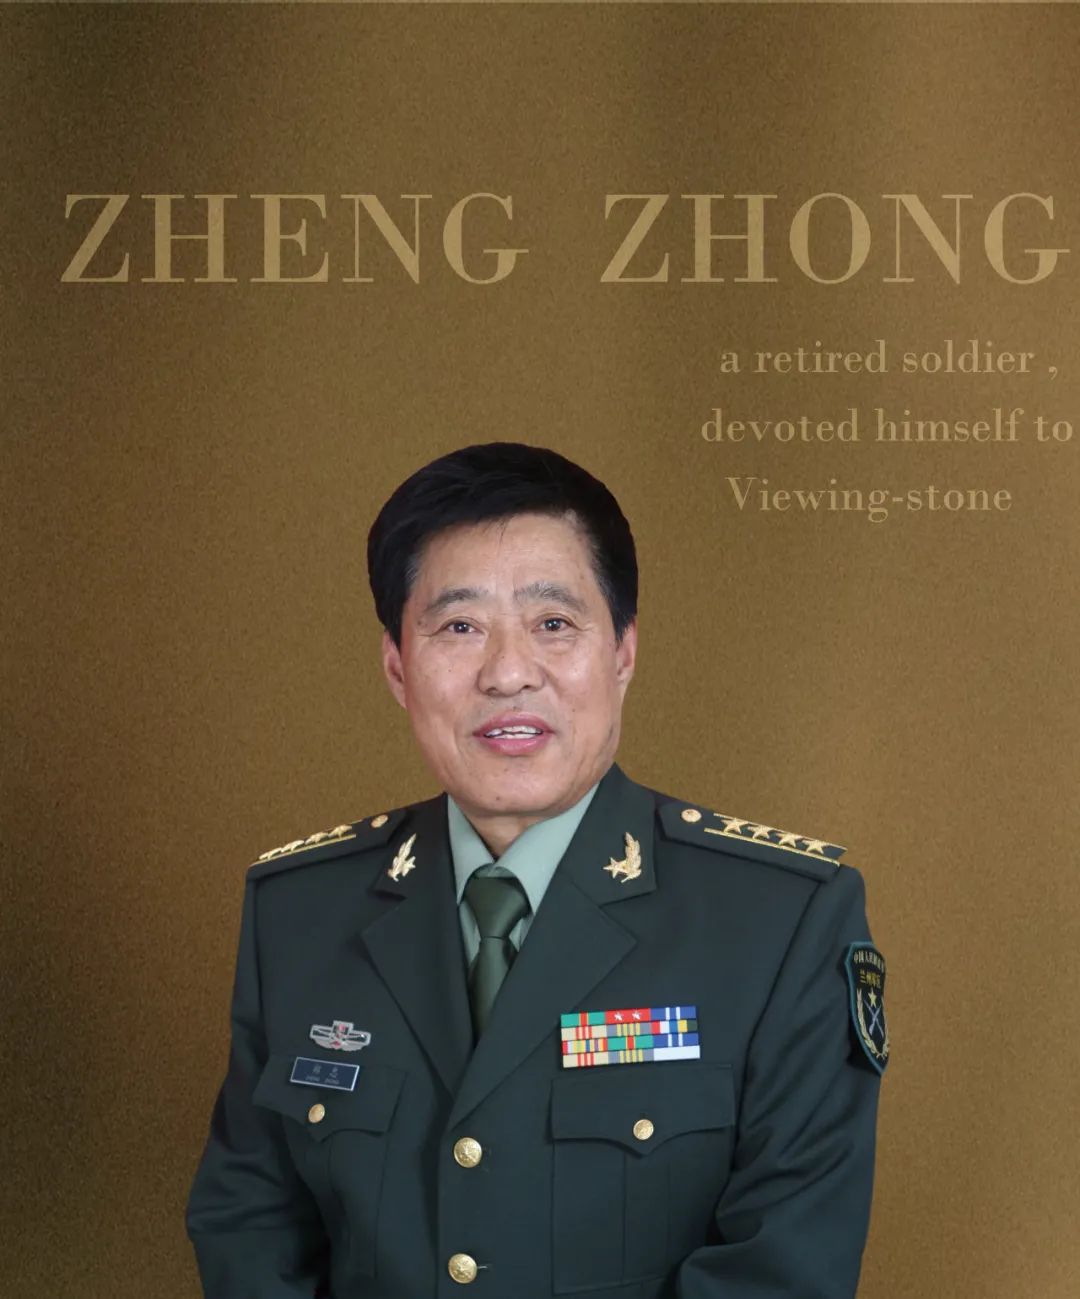 郑忠，一名中国退休军人的赏石宣言。